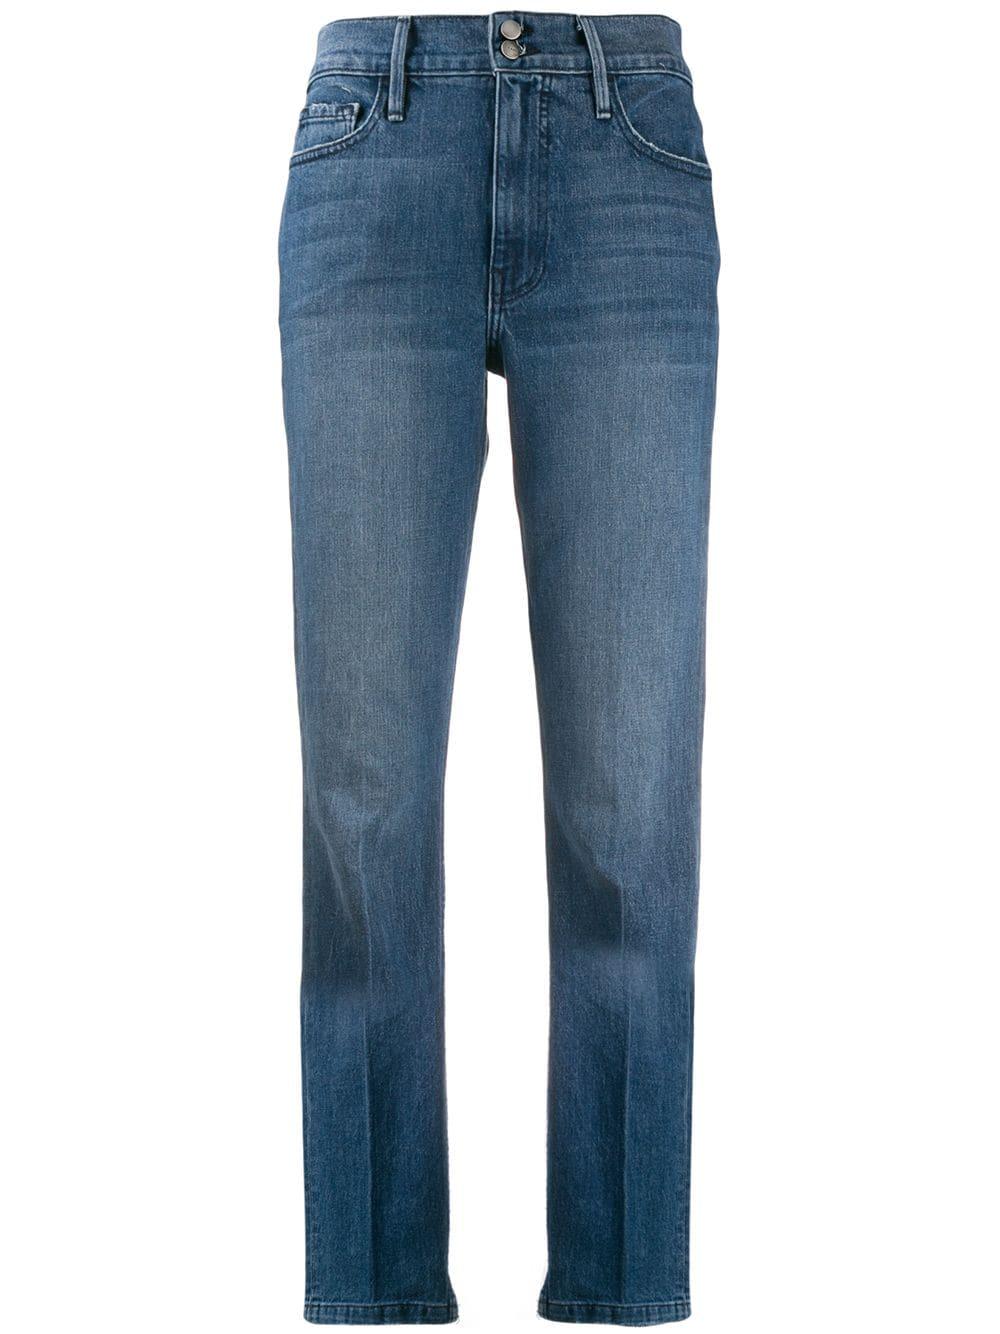 FRAME Denim Eagle Rock Jeans in Blue - Lyst